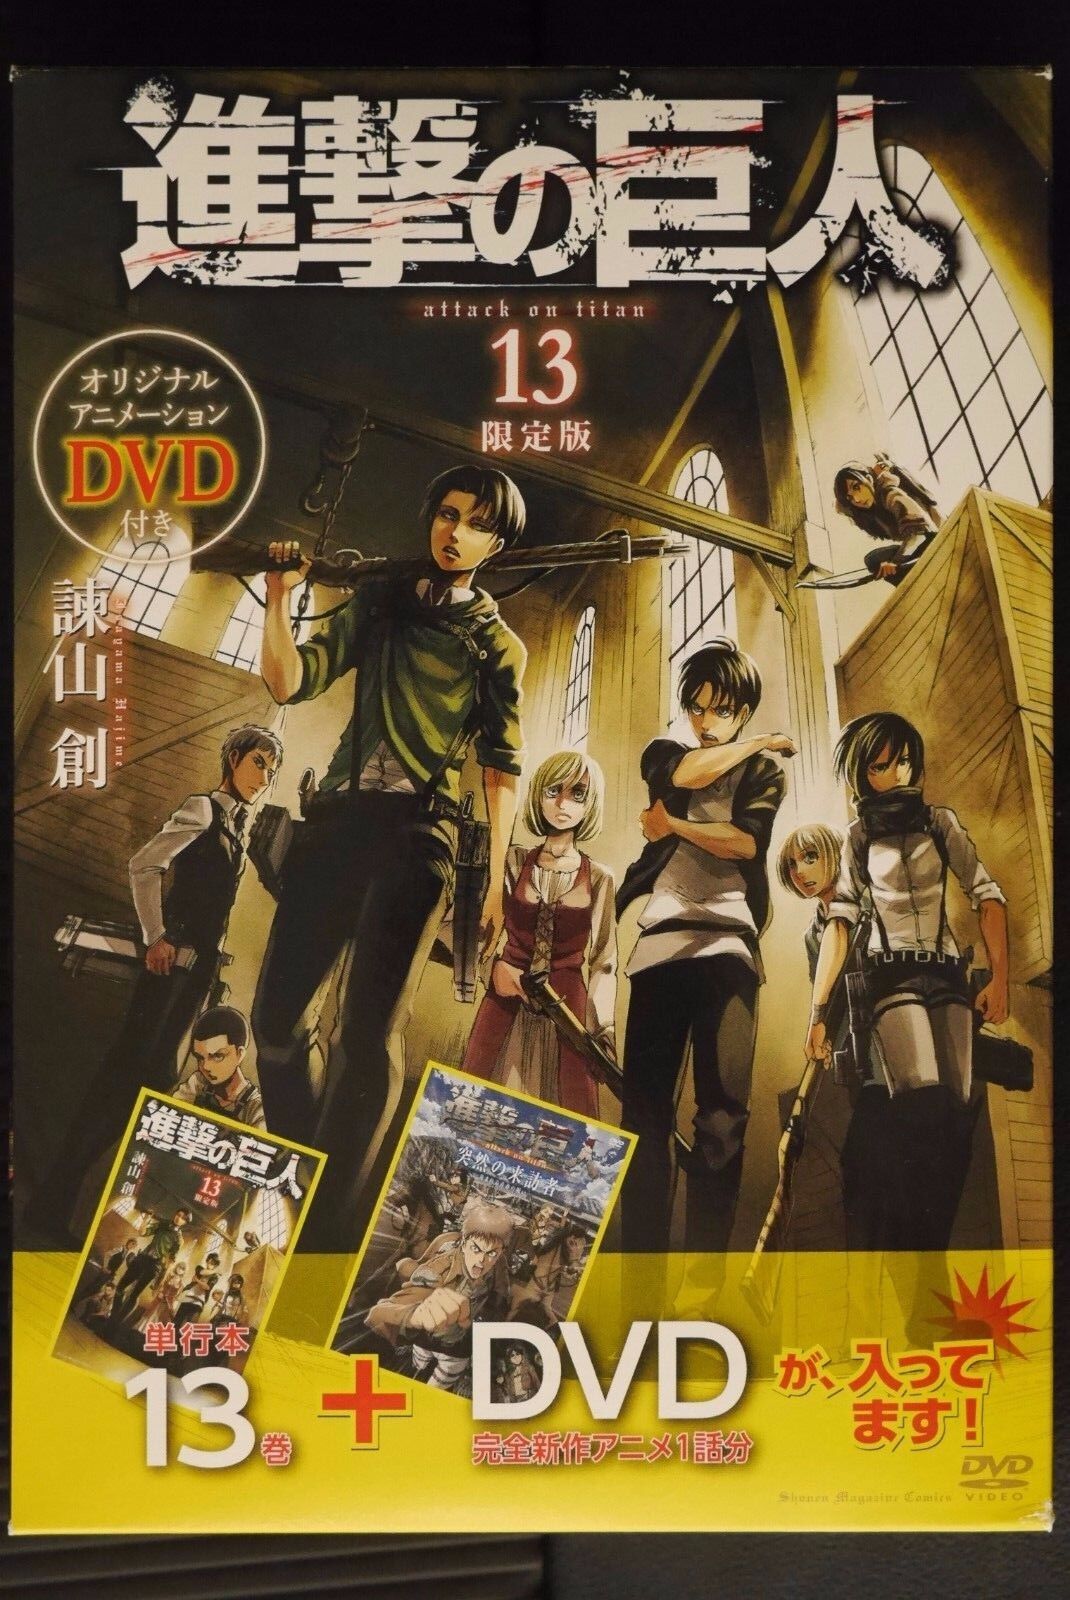 JAPAN Hajime Isayama: Attack on Titan / Shingeki no Kyojin 13 Limited Edition